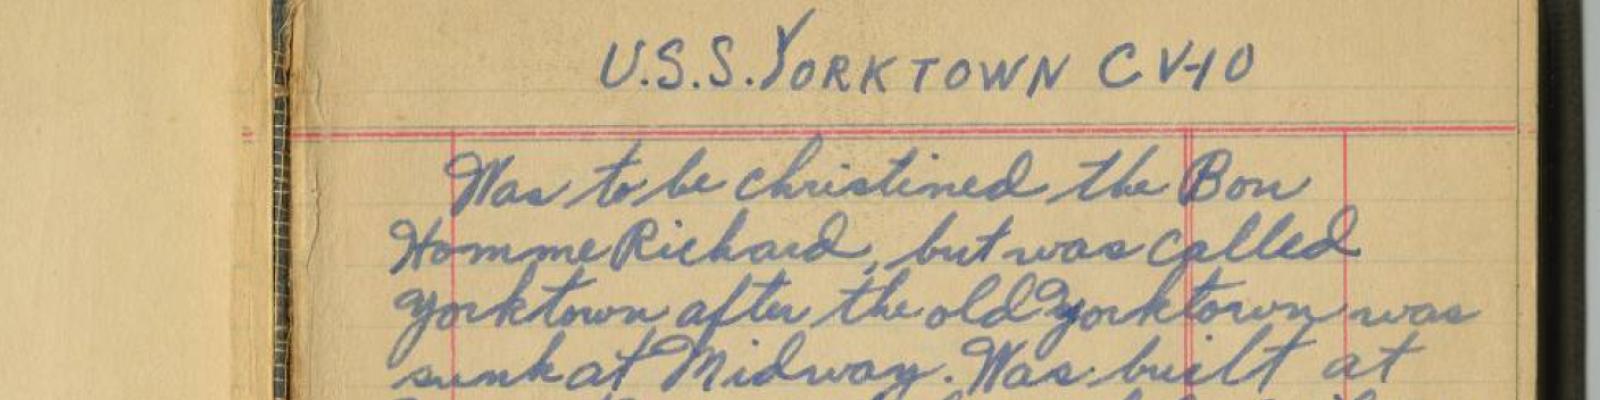 USS Yorktown Diary